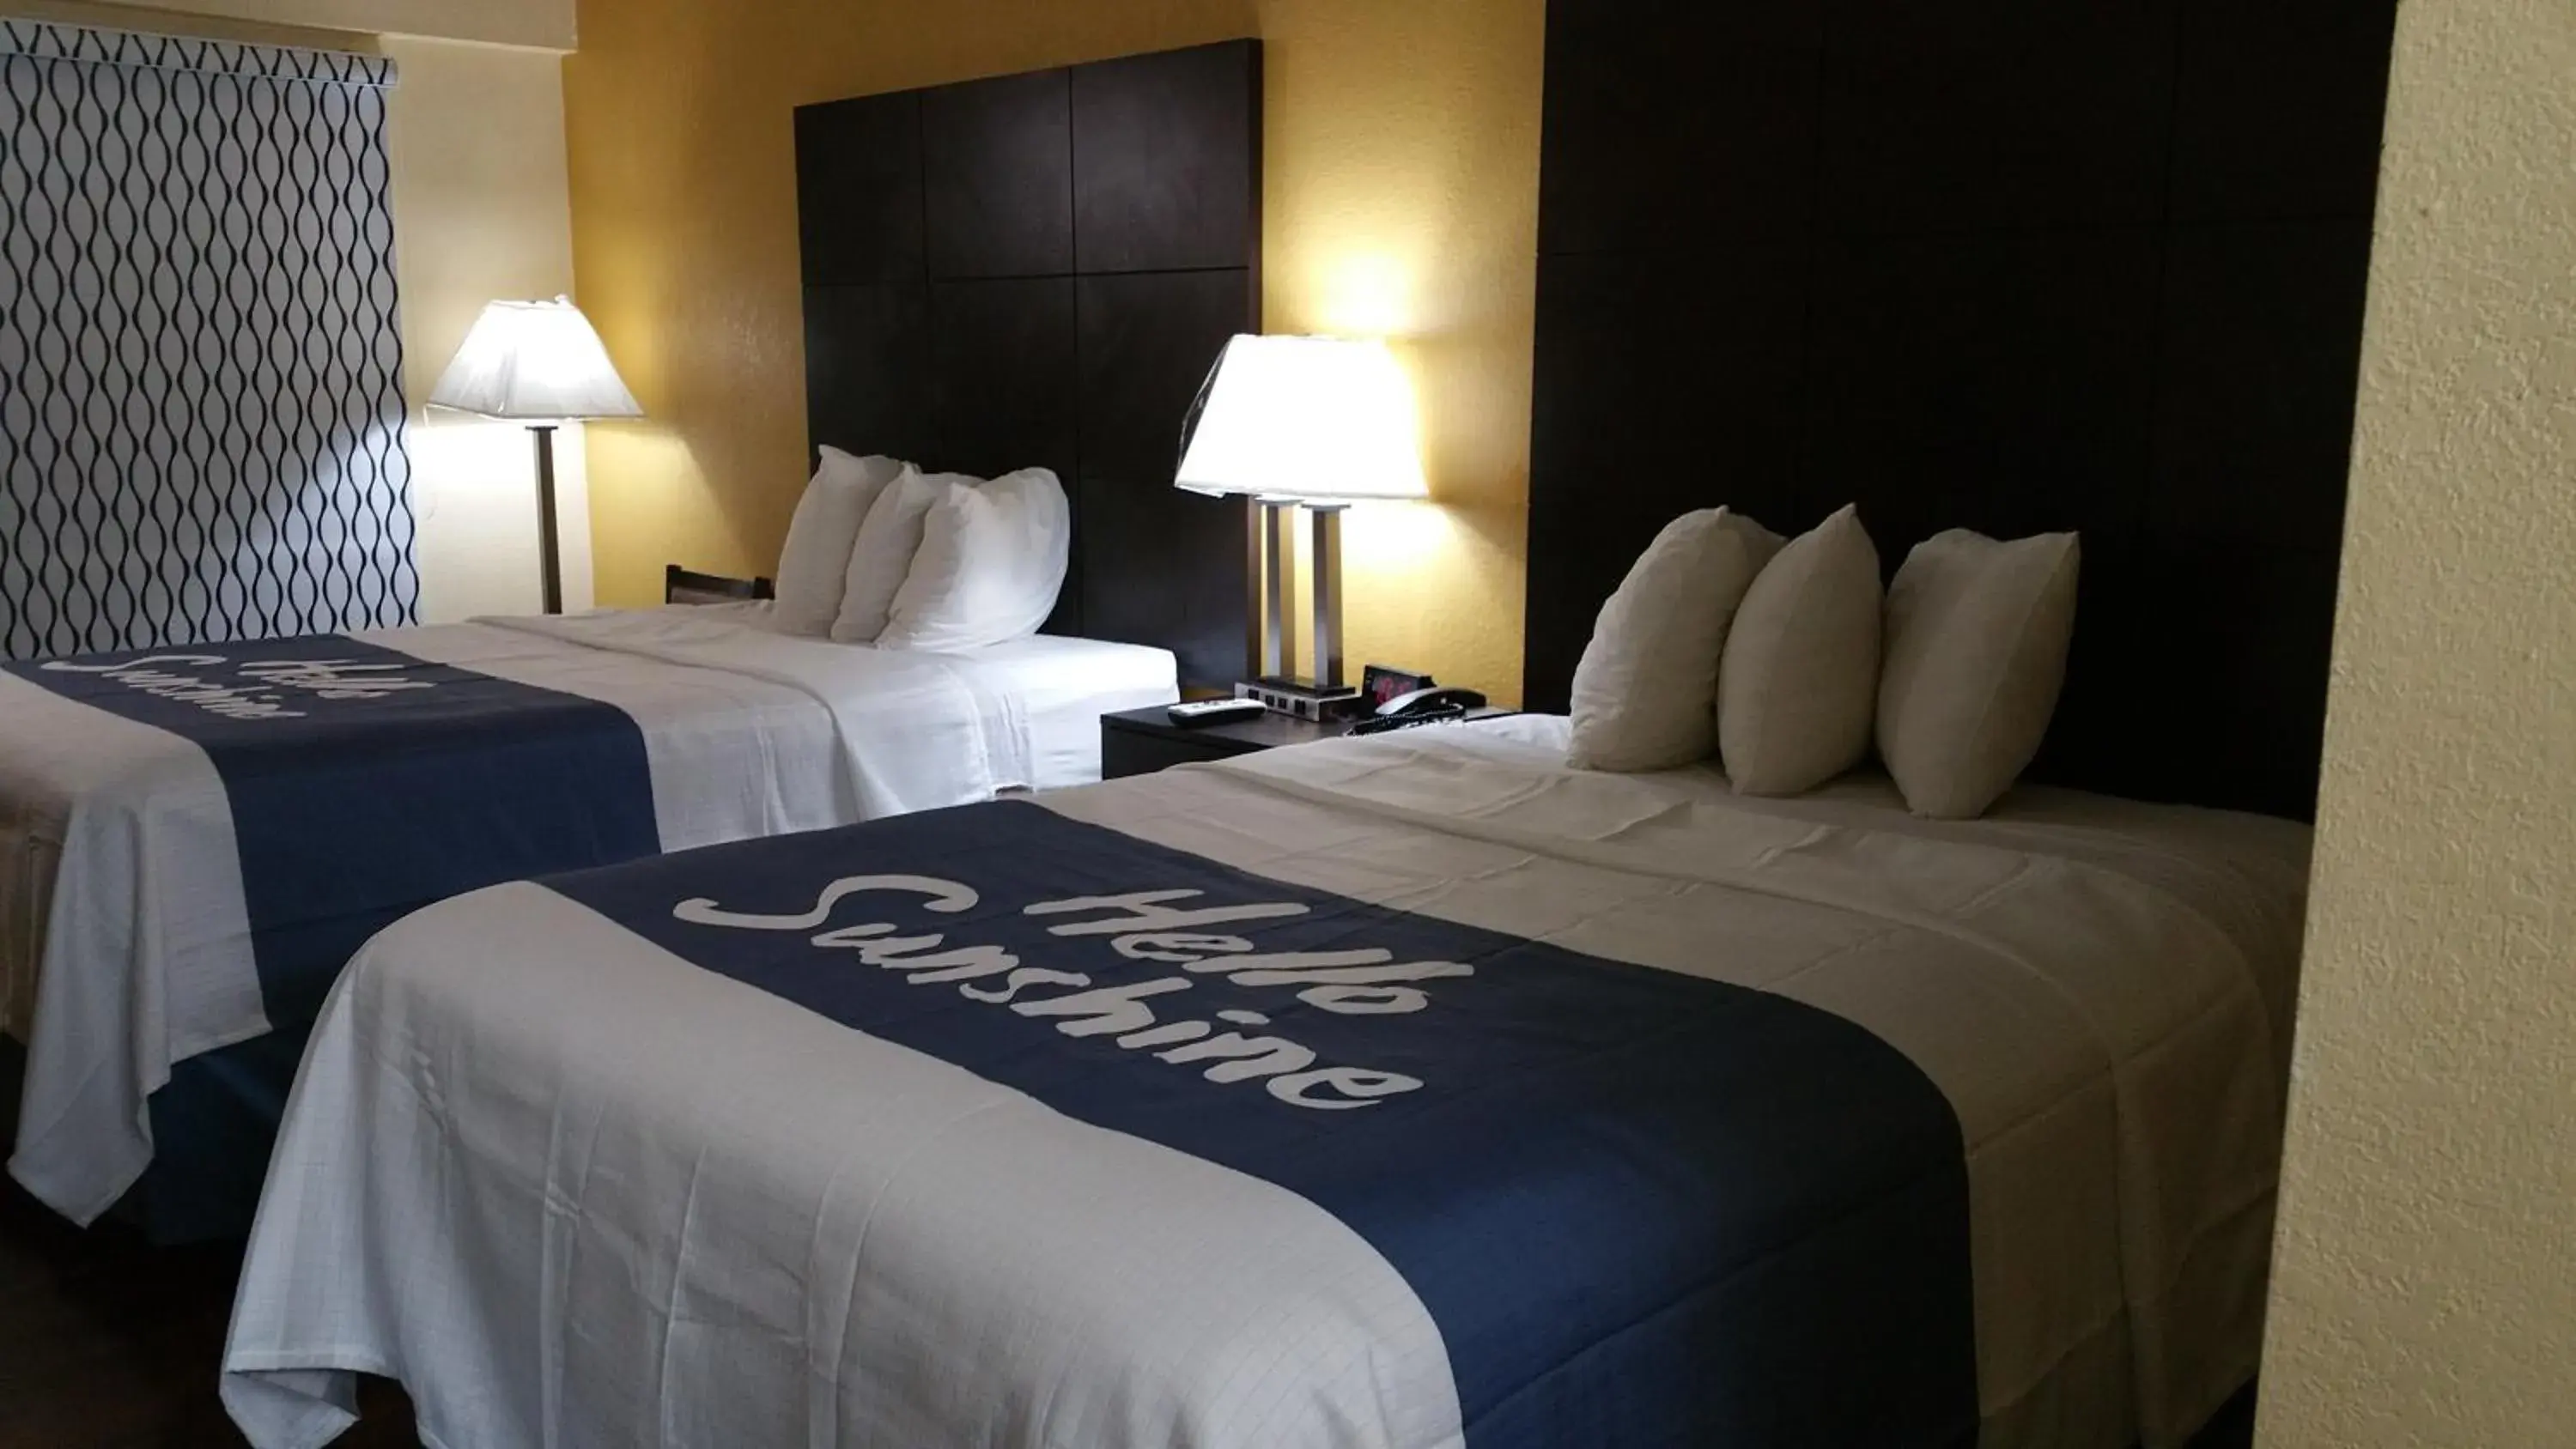 Bed in Days Inn by Wyndham Ridgeland South Carolina